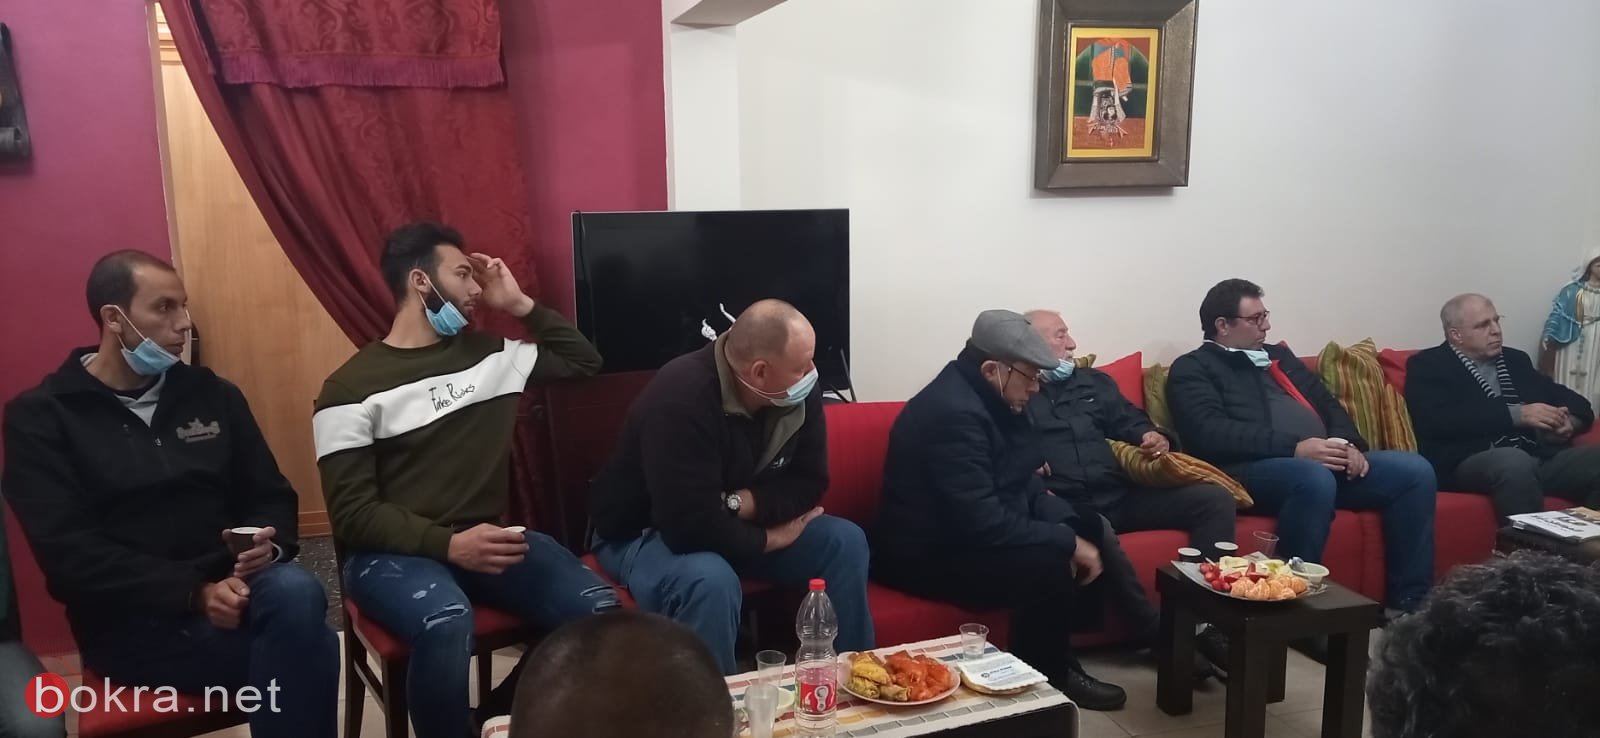 دراوشة يصرّح خلال حلقة بيتيّة في عيلبون: "نحن تيّار سياسيّ وسطيّ معتدل"!-1